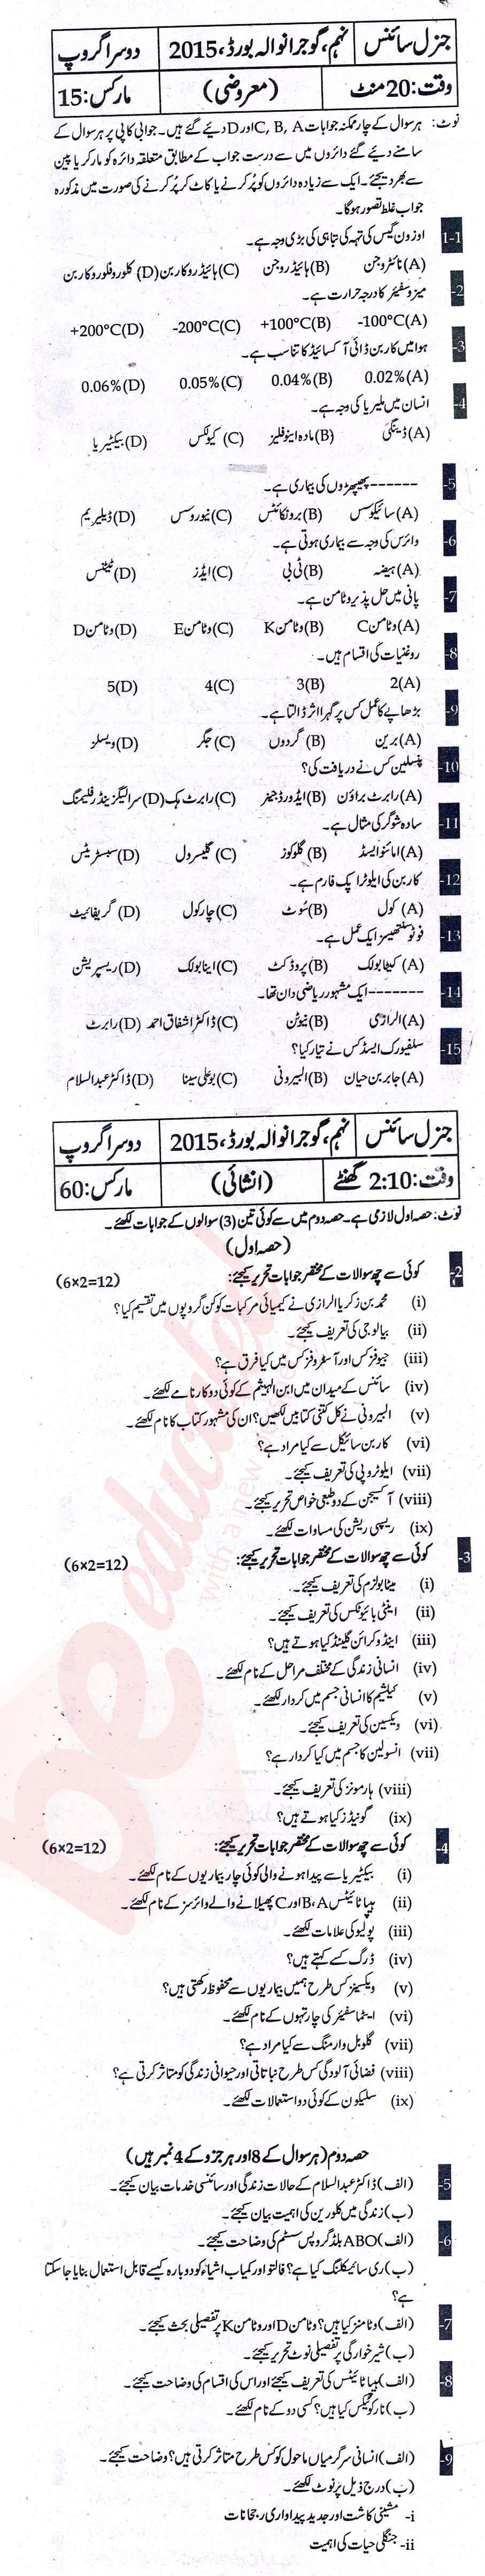 Science 9th Urdu Medium Past Paper Group 2 BISE Gujranwala 2015